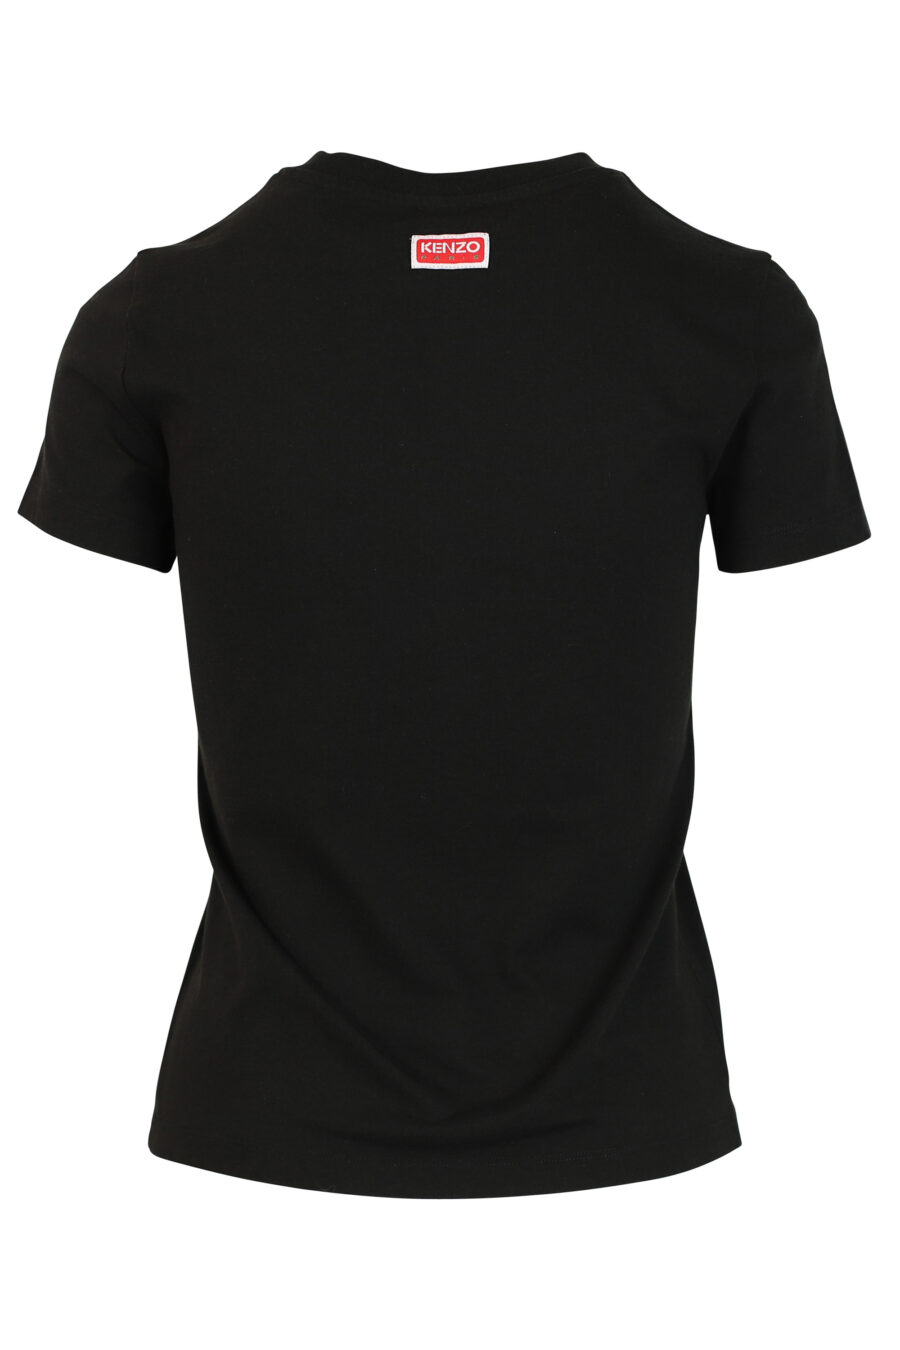 T-shirt preta com maxilogo de tigre - 3612230460195 2